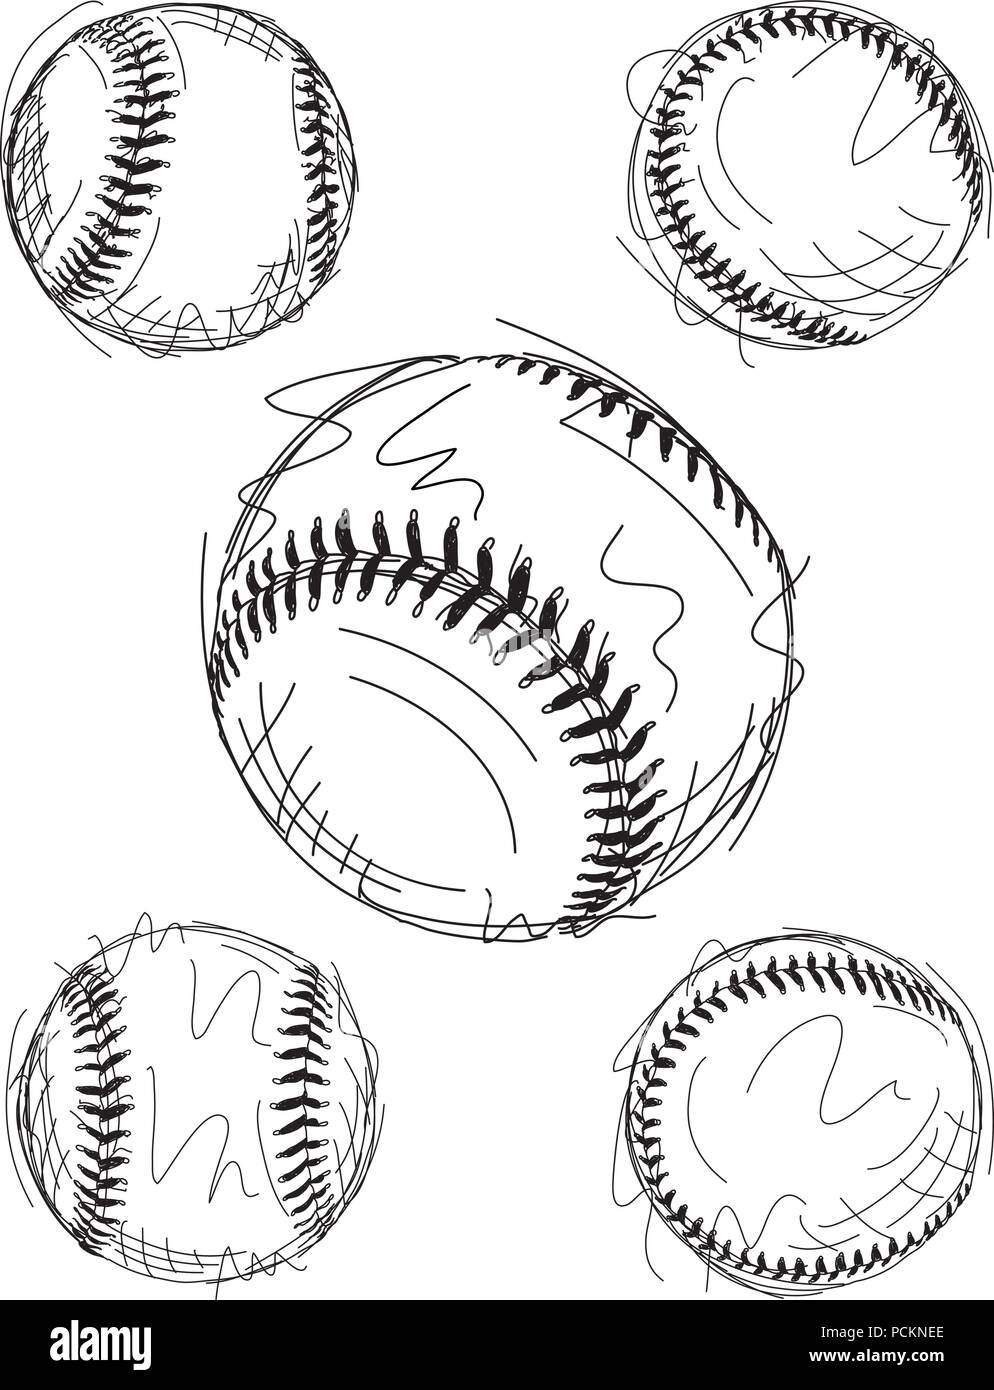 Croquis de base-ball Illustration de Vecteur